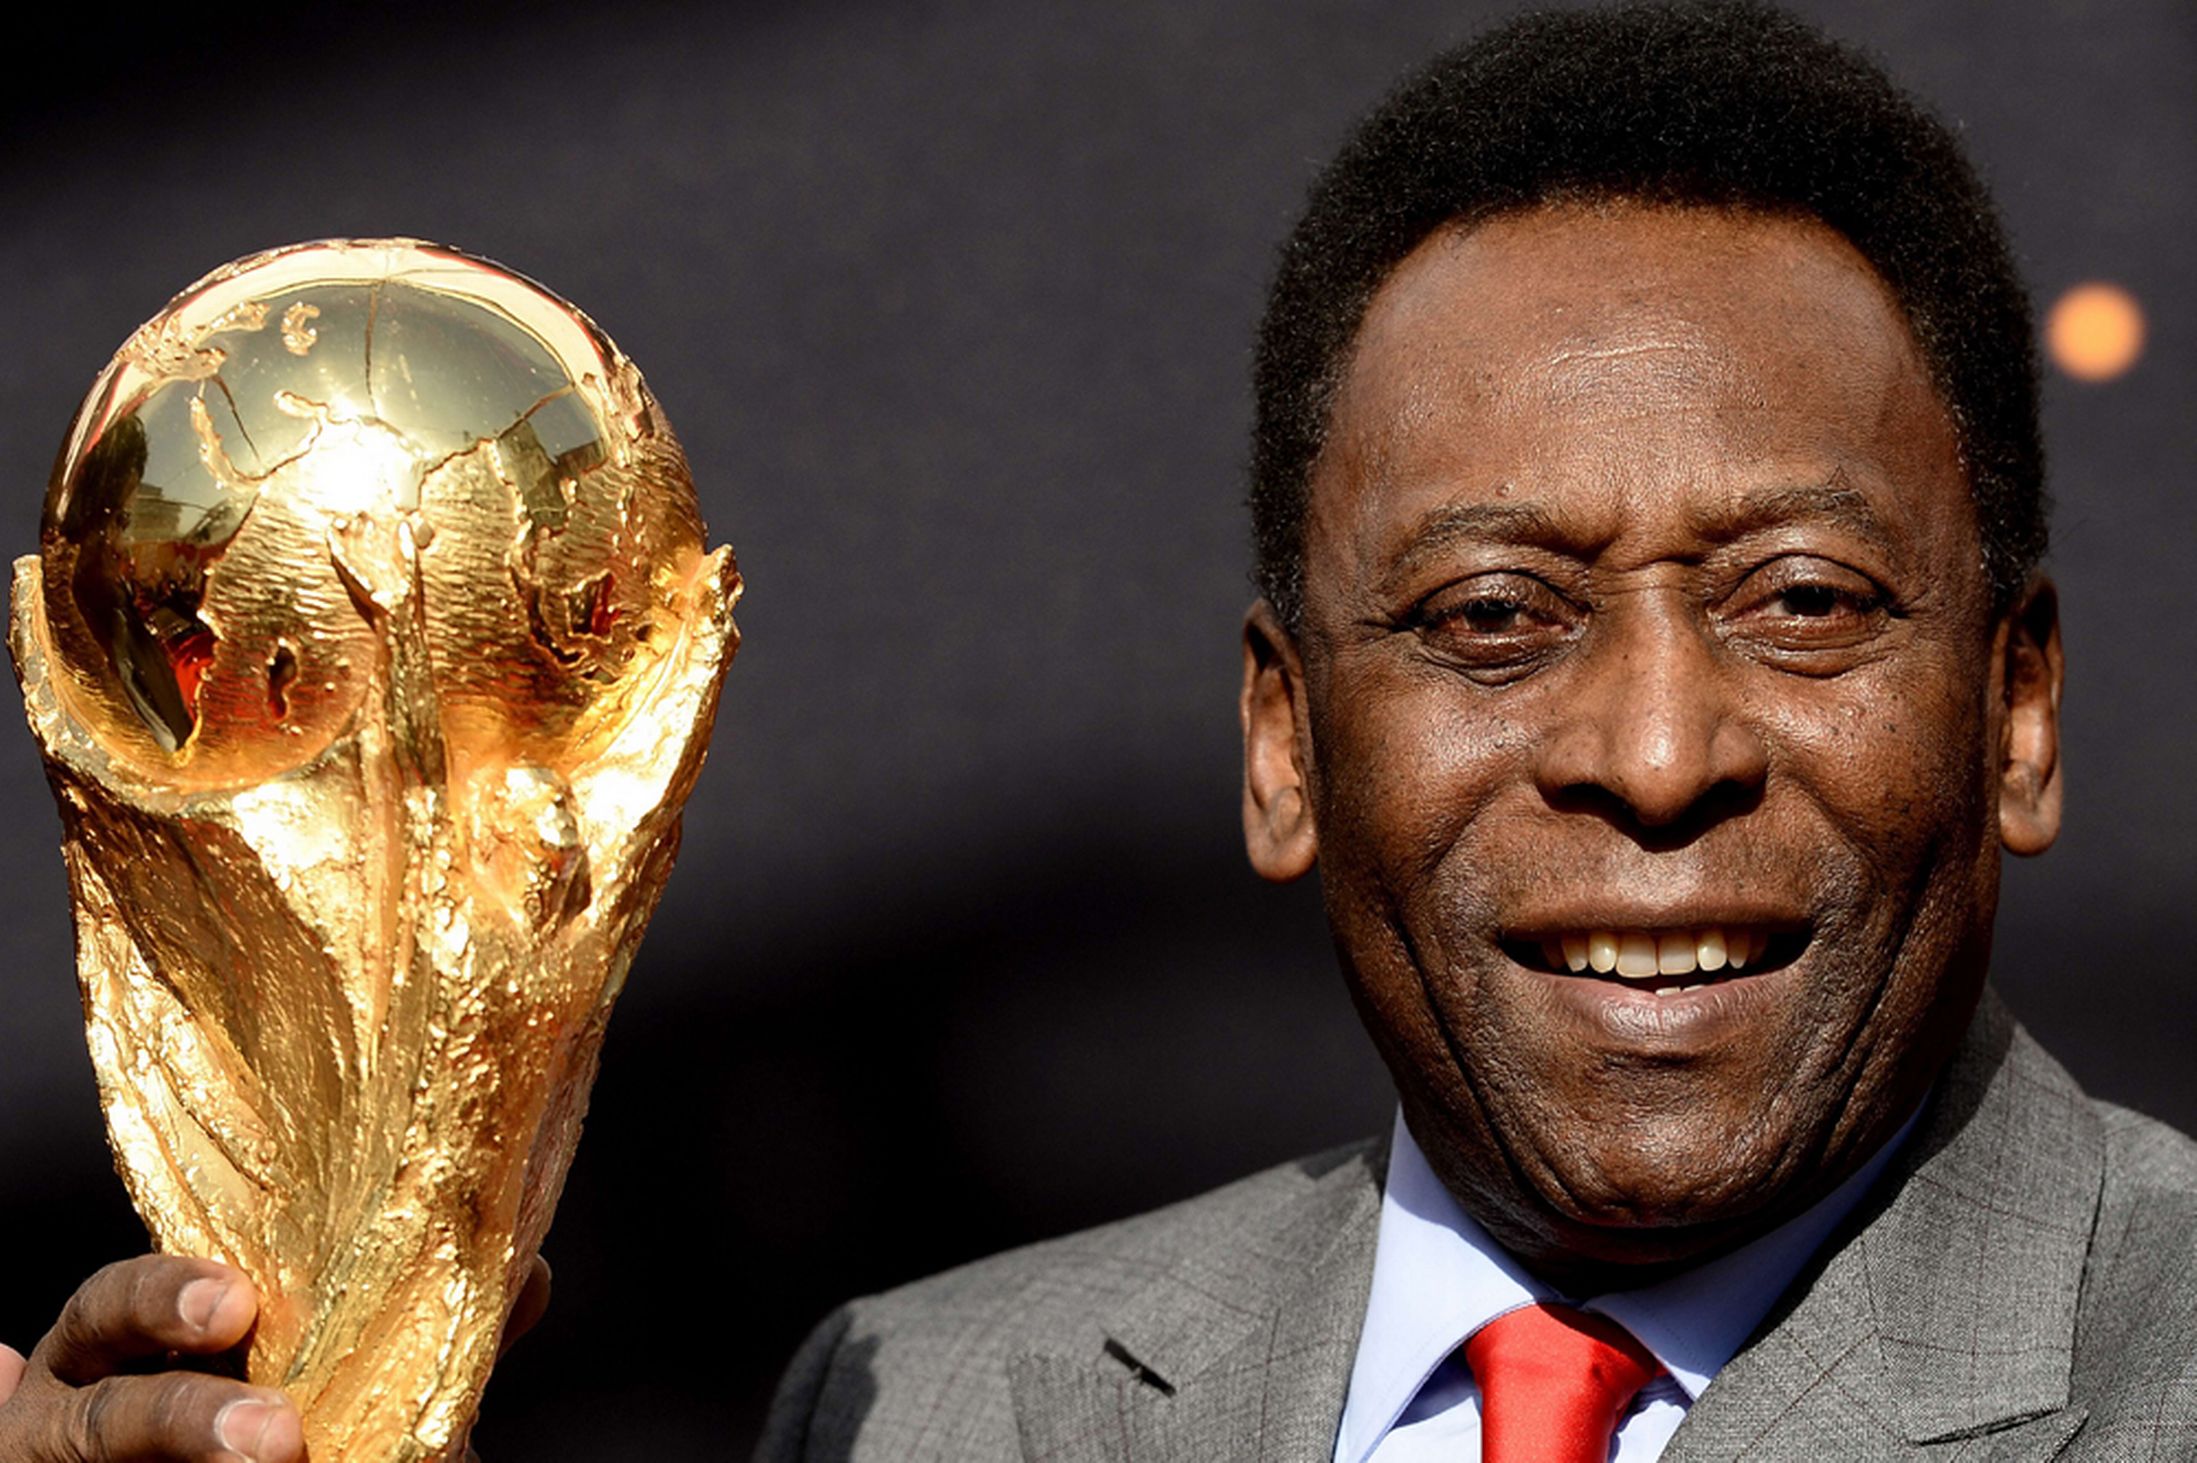  Subastará Pelé medallas y trofeos porque ‘todos necesitan dinero’